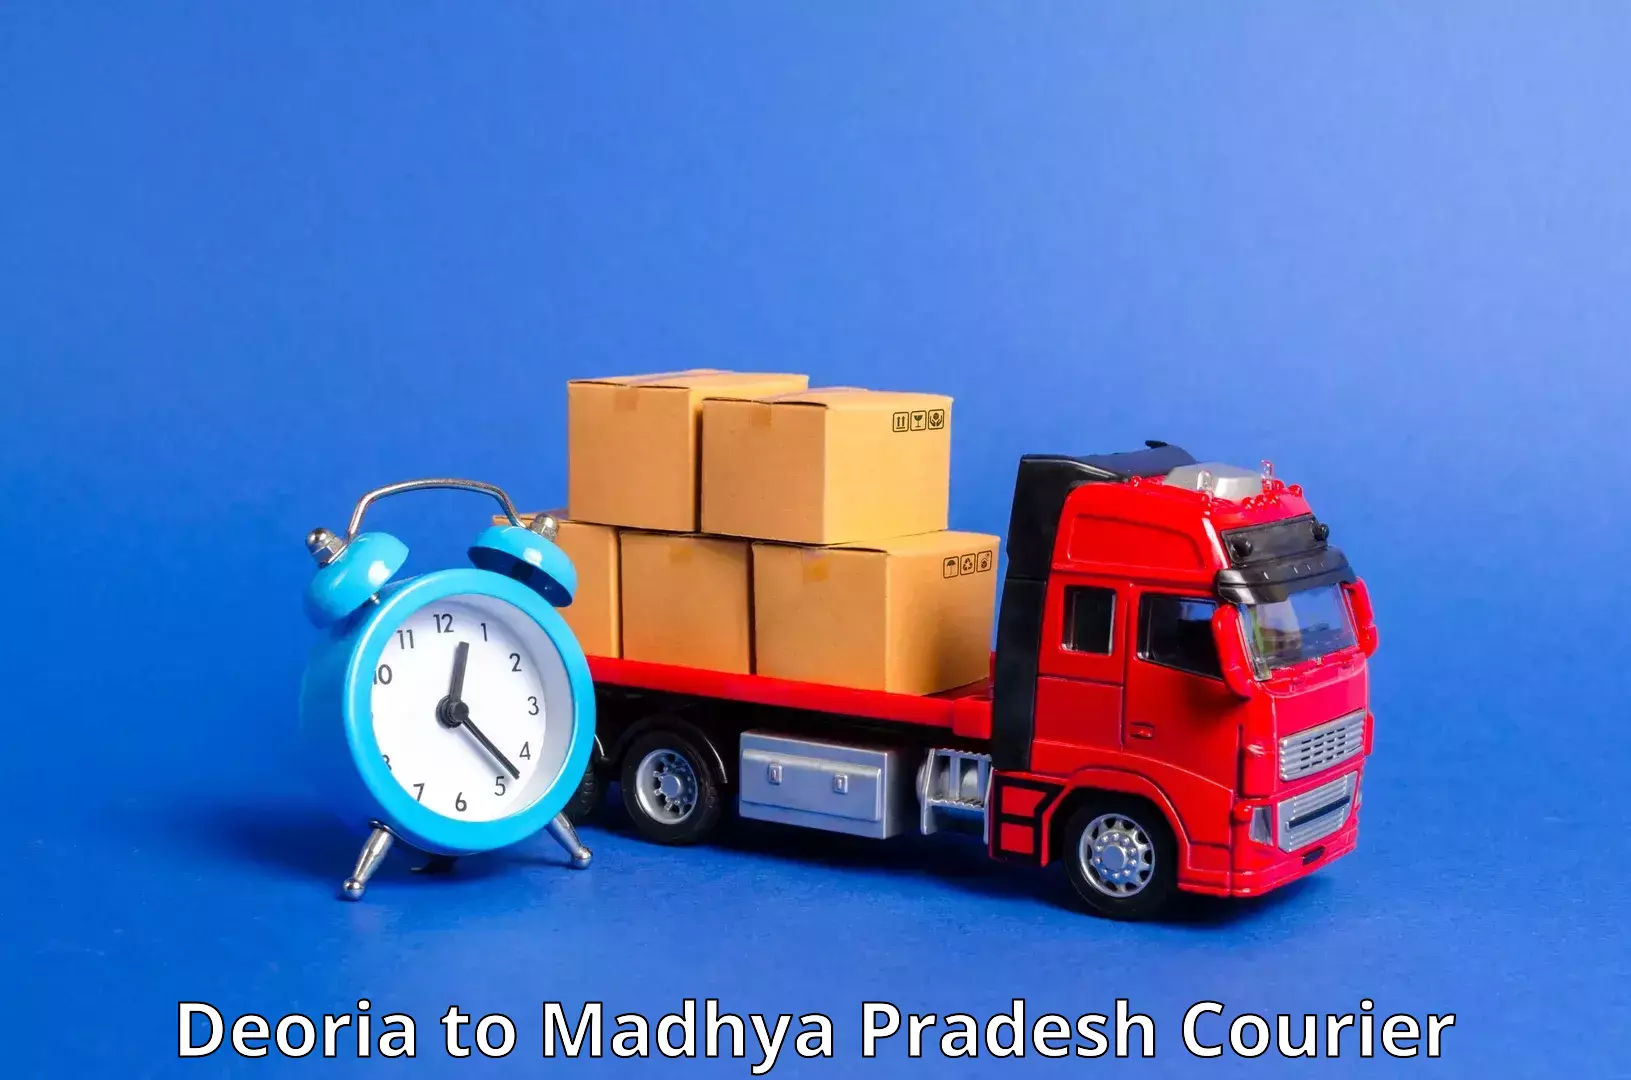 Express logistics providers Deoria to Berasia